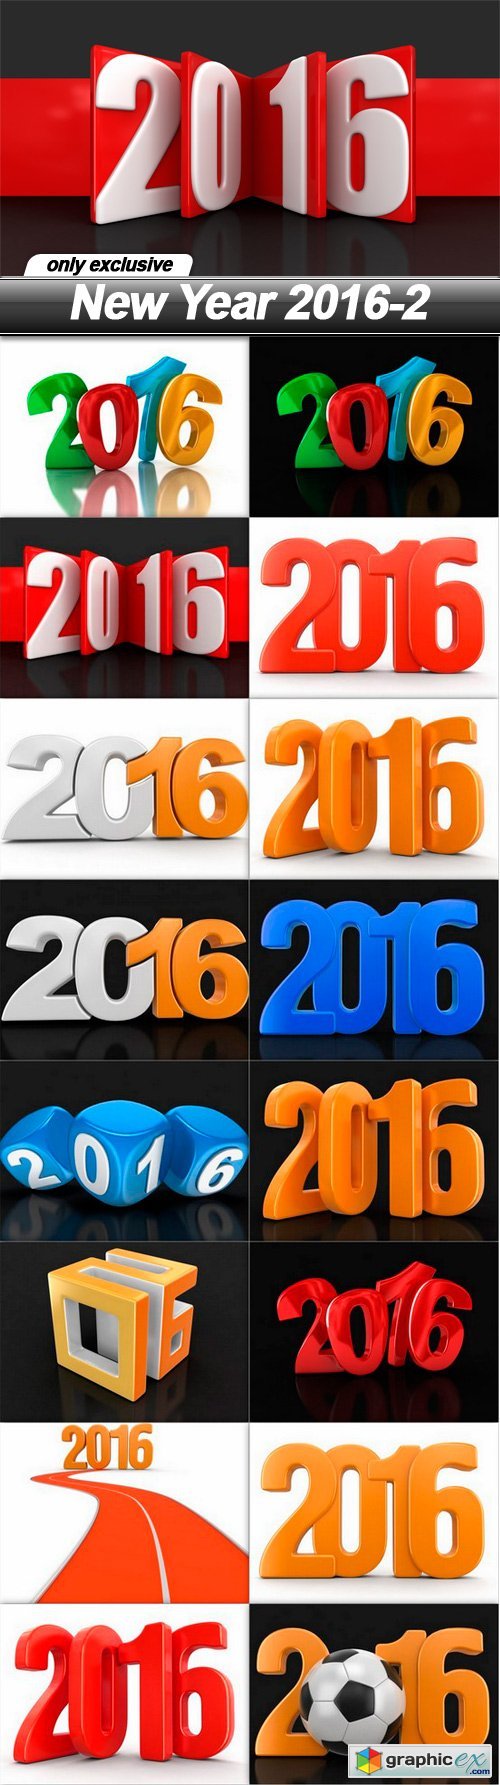 New Year 2016-2 - 16 UHQ JPEG